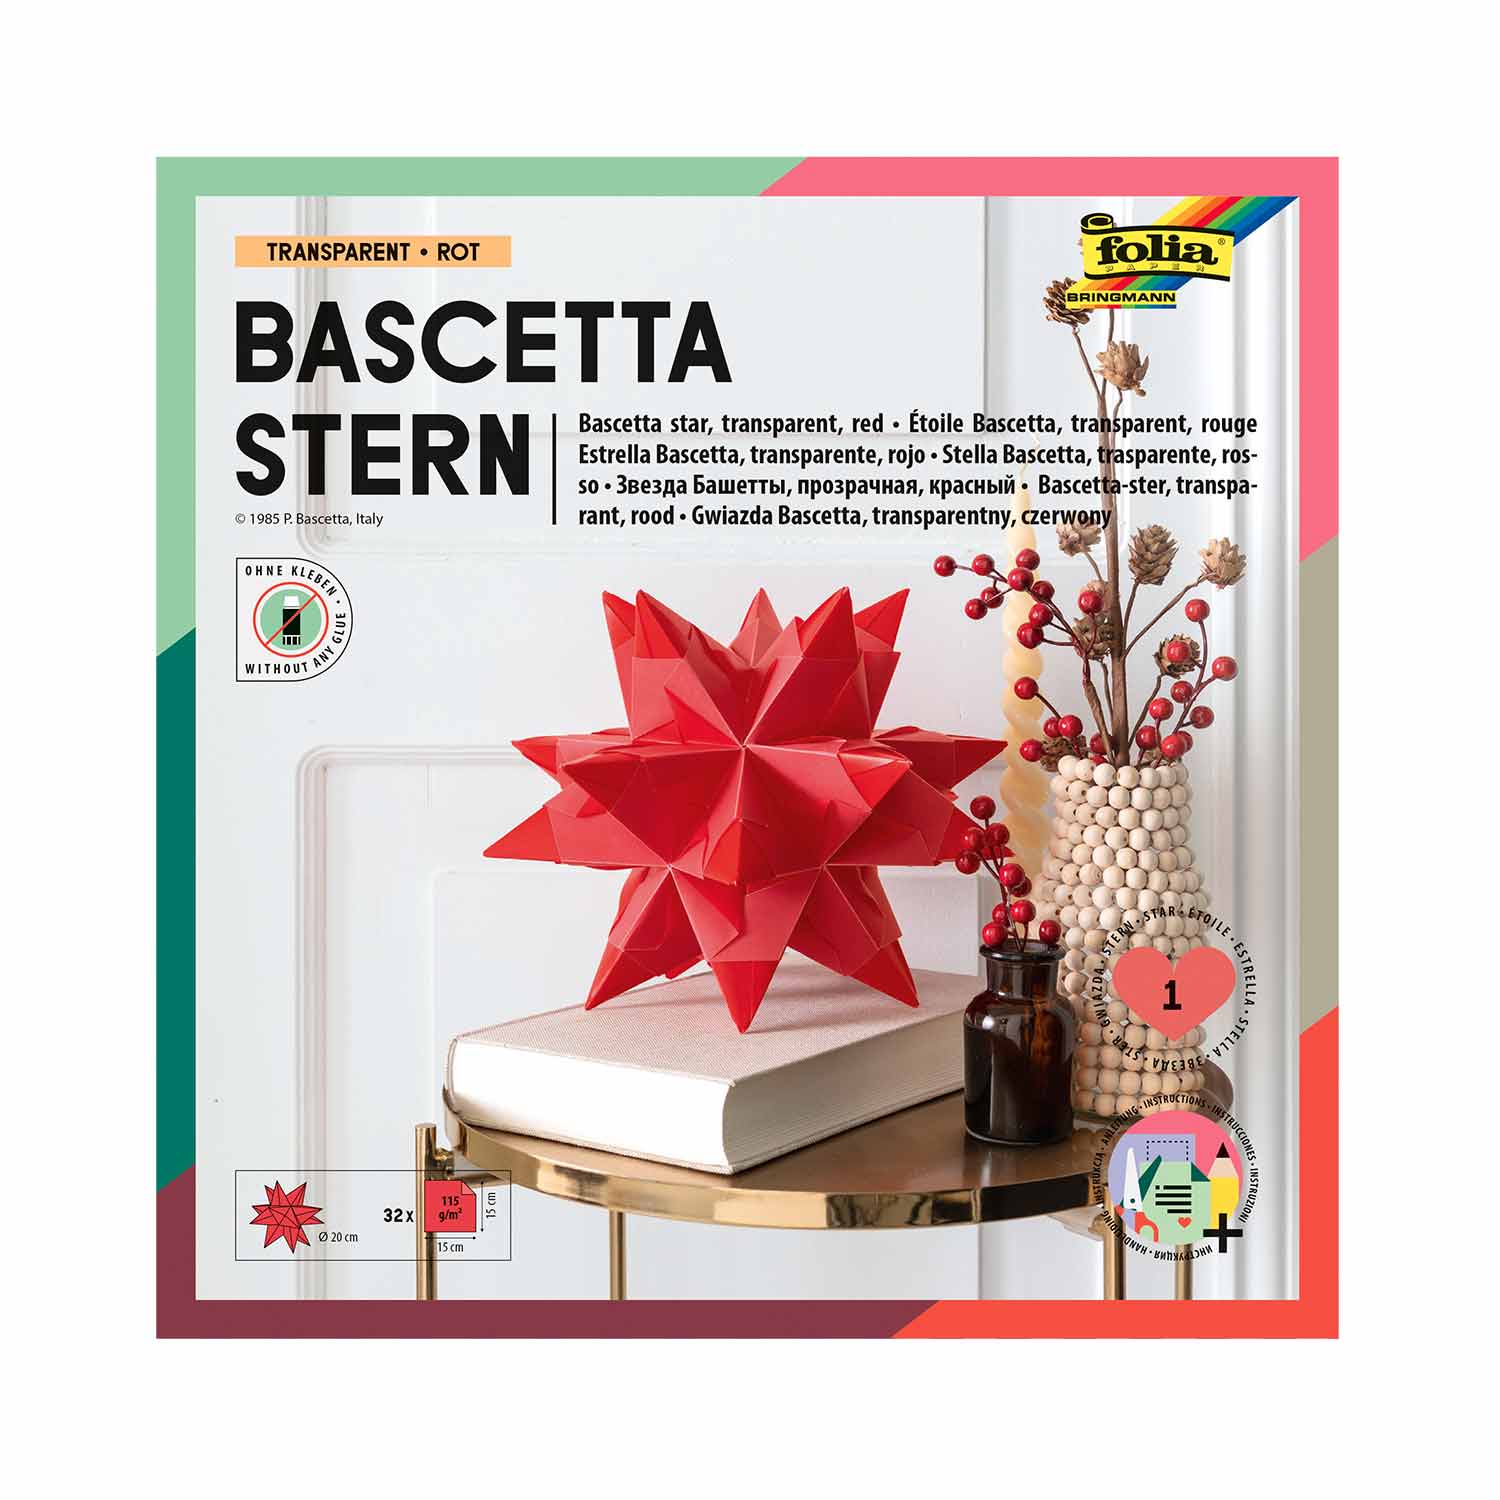 Bascetta-Stern Bastelset 32 Blatt 15 x 15 cm Transparentpapier rot